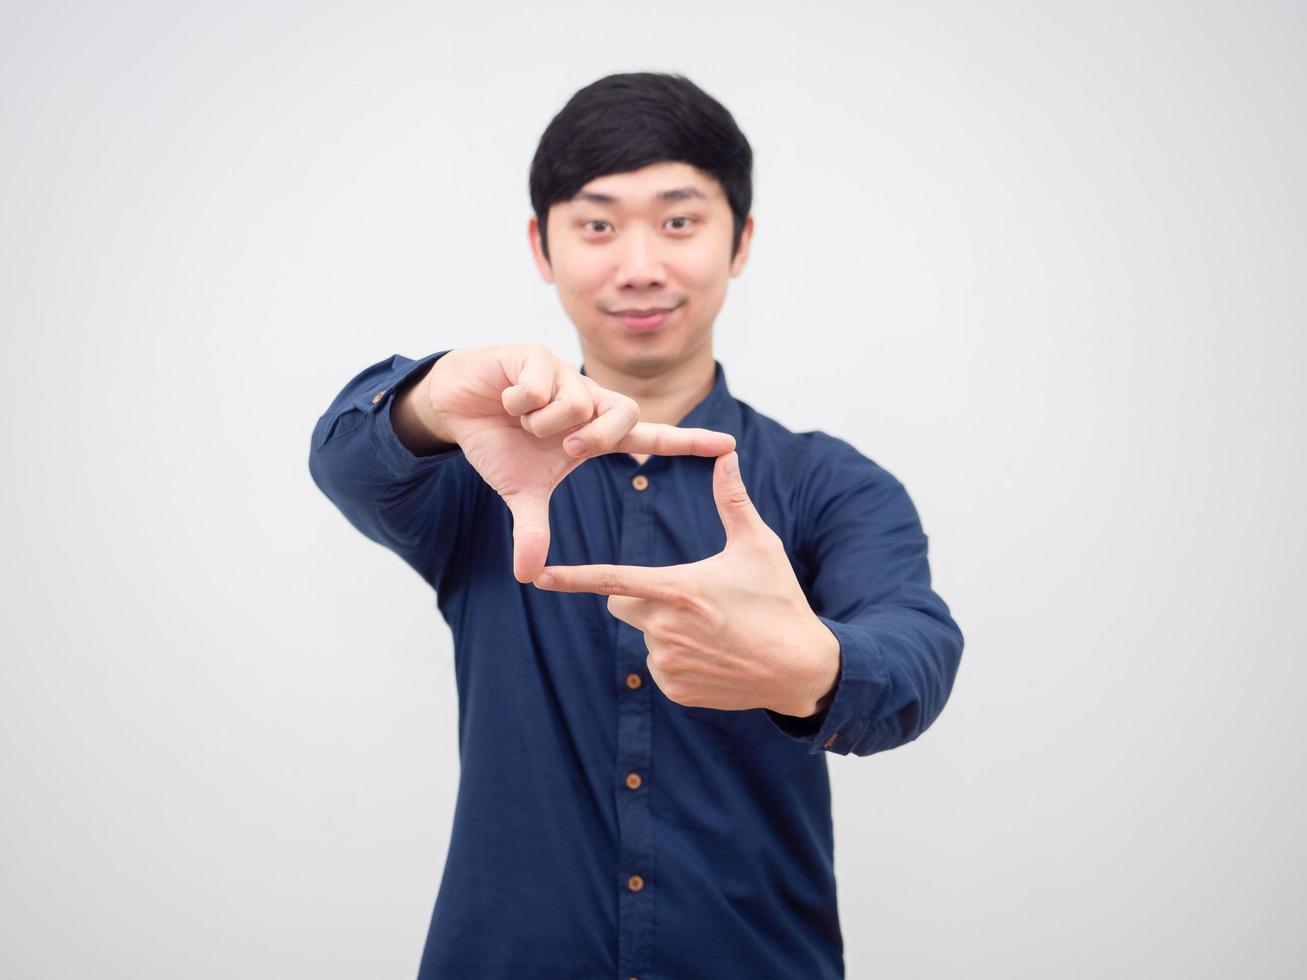 el hombre asiático hace su dedo cuadrado de la mano con una sonrisa feliz en la cara de fondo blanco foto